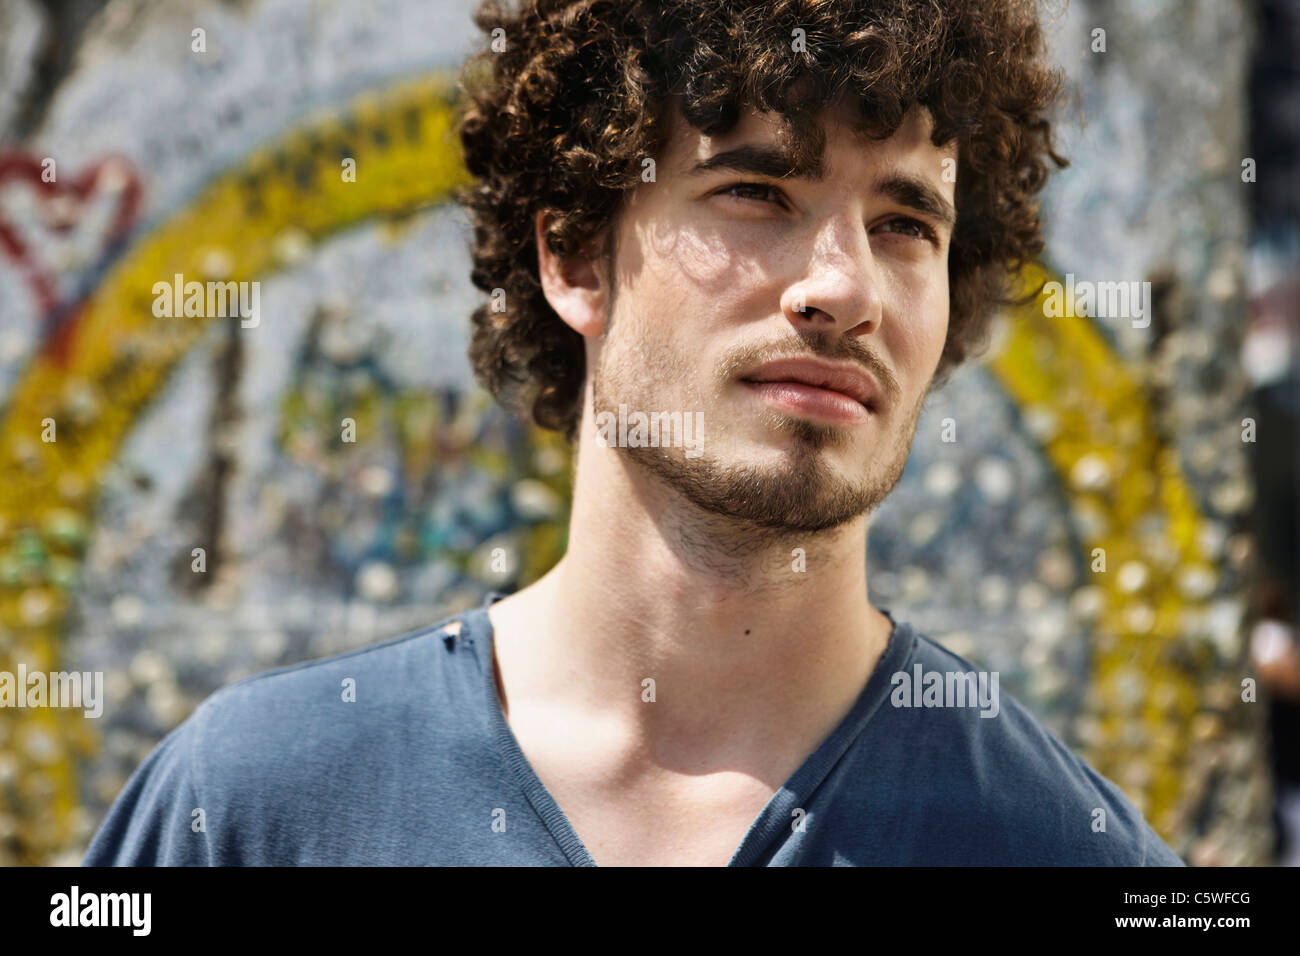 Germania, Berlino, giovane uomo in piedi di fronte a muro con graffiti, ritratto, close-up Foto Stock